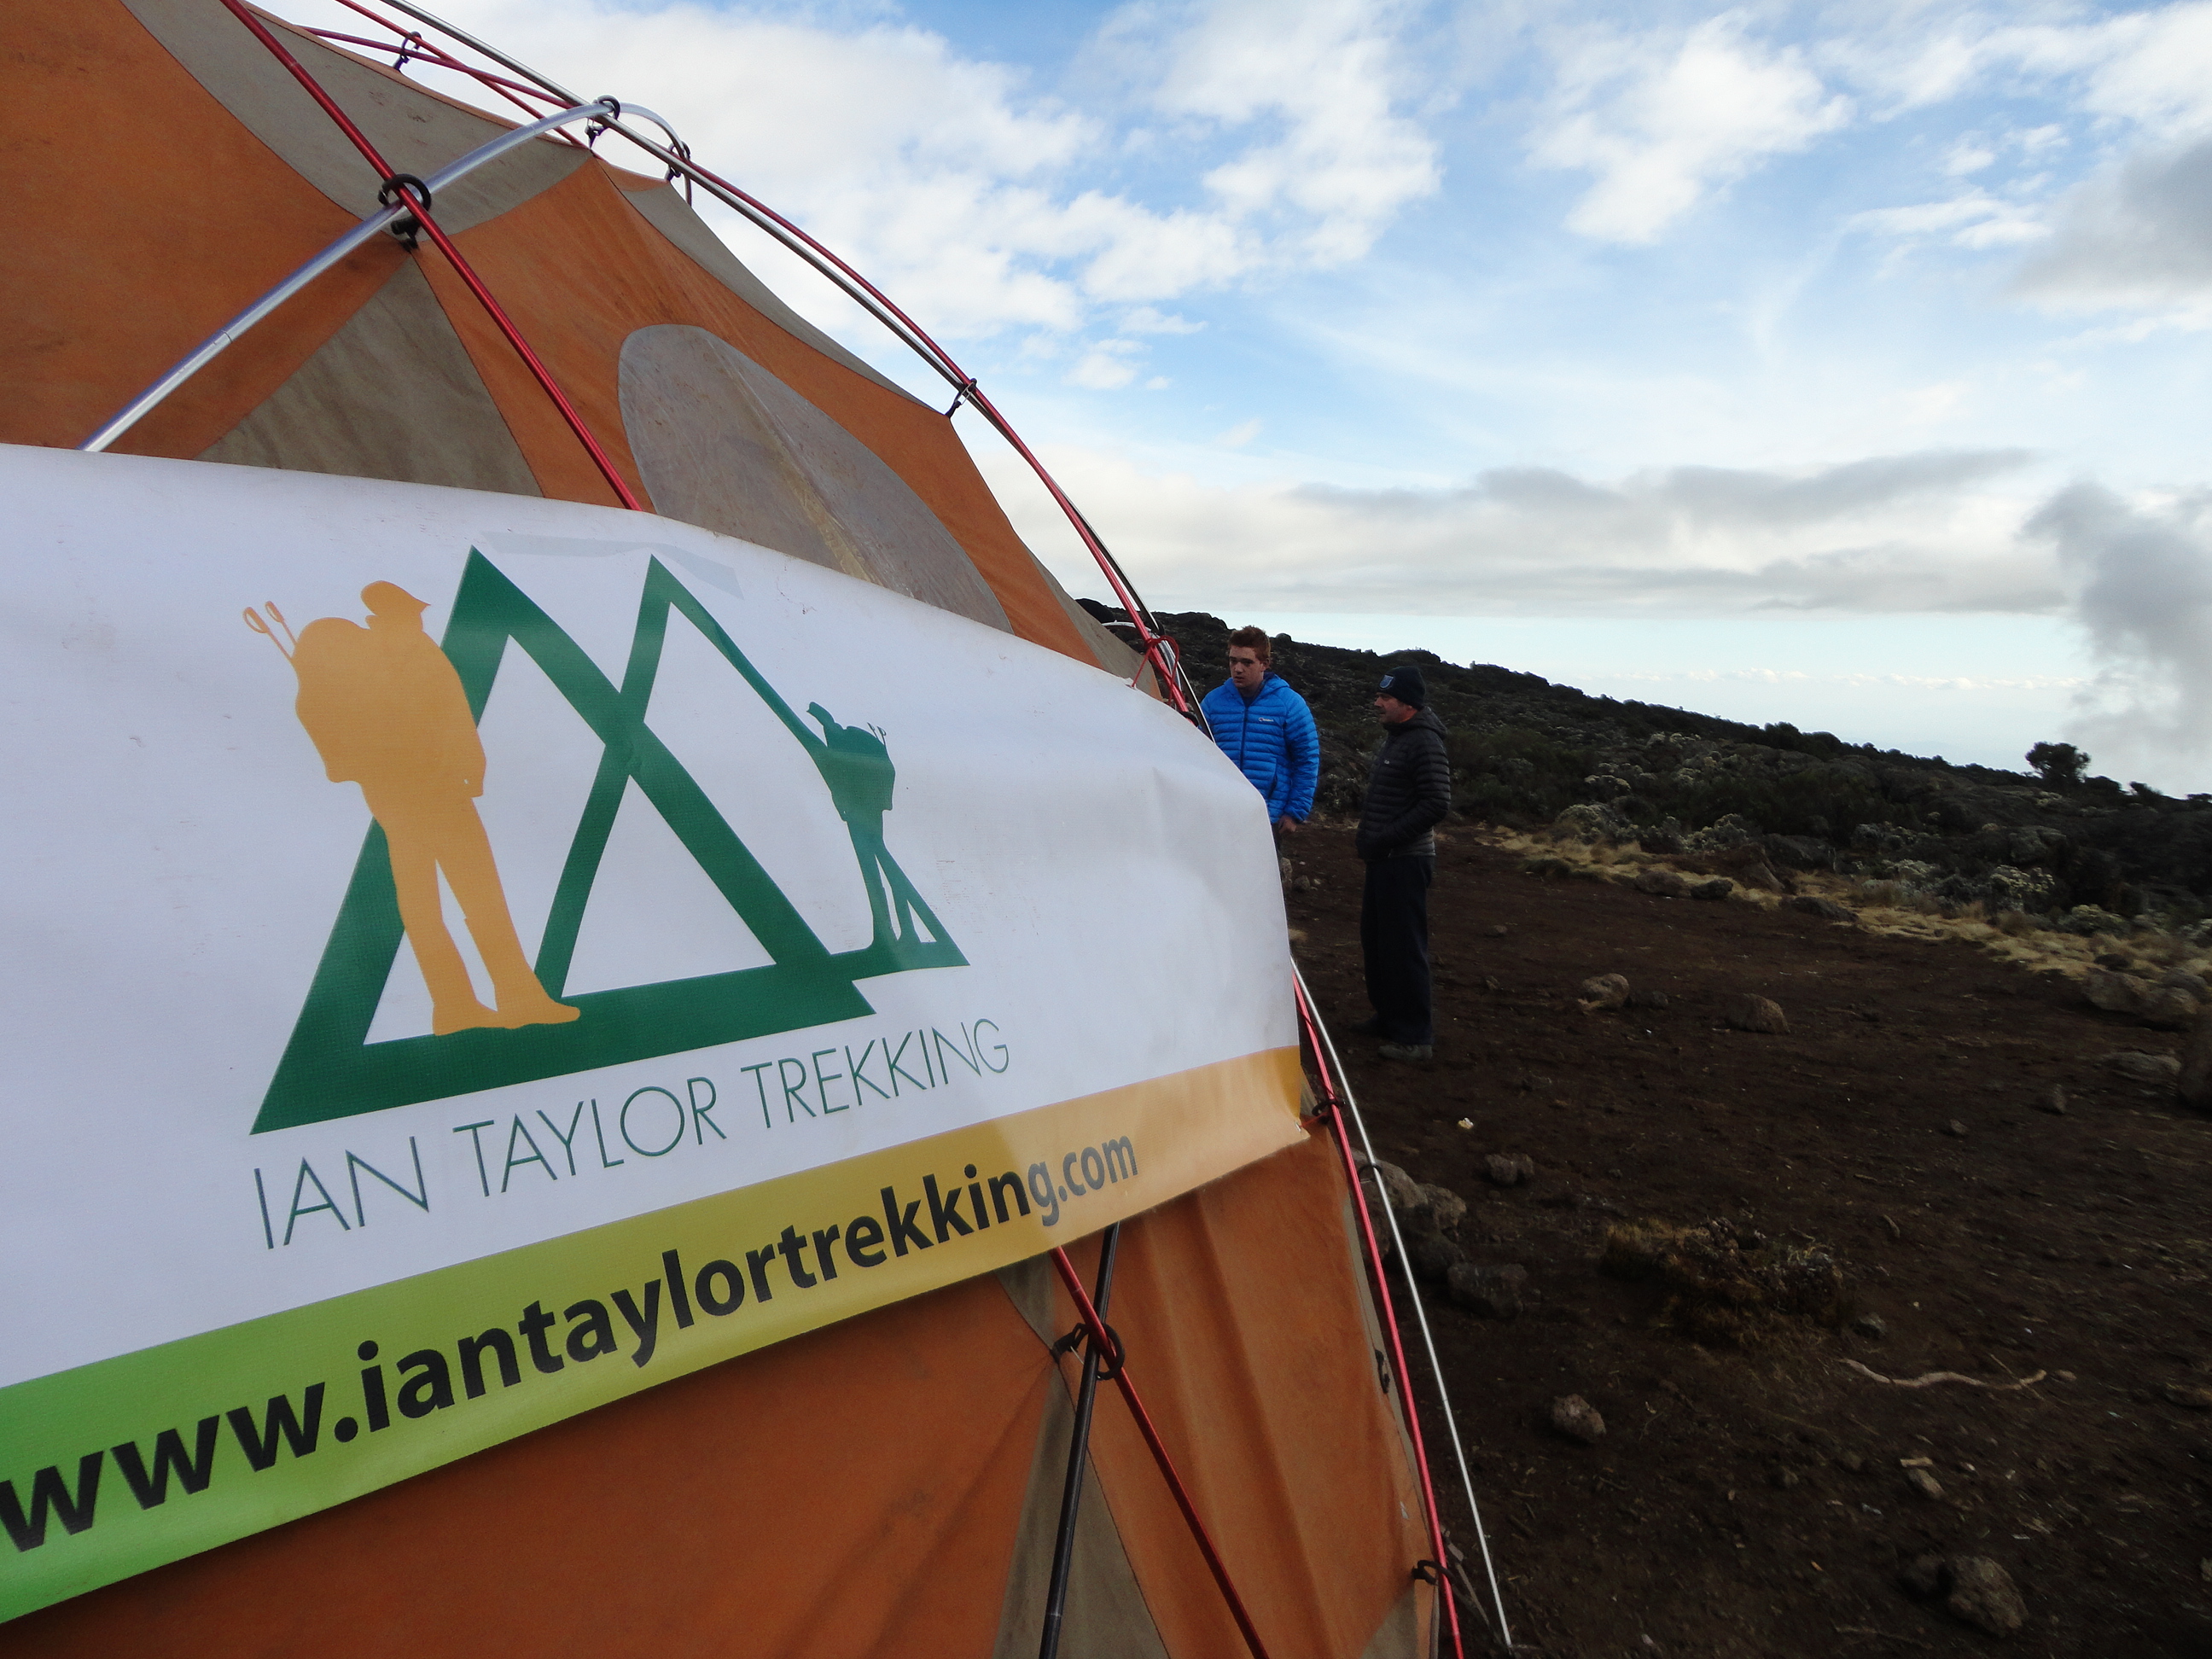 Ian Taylor Trekking on Kilimanjaro